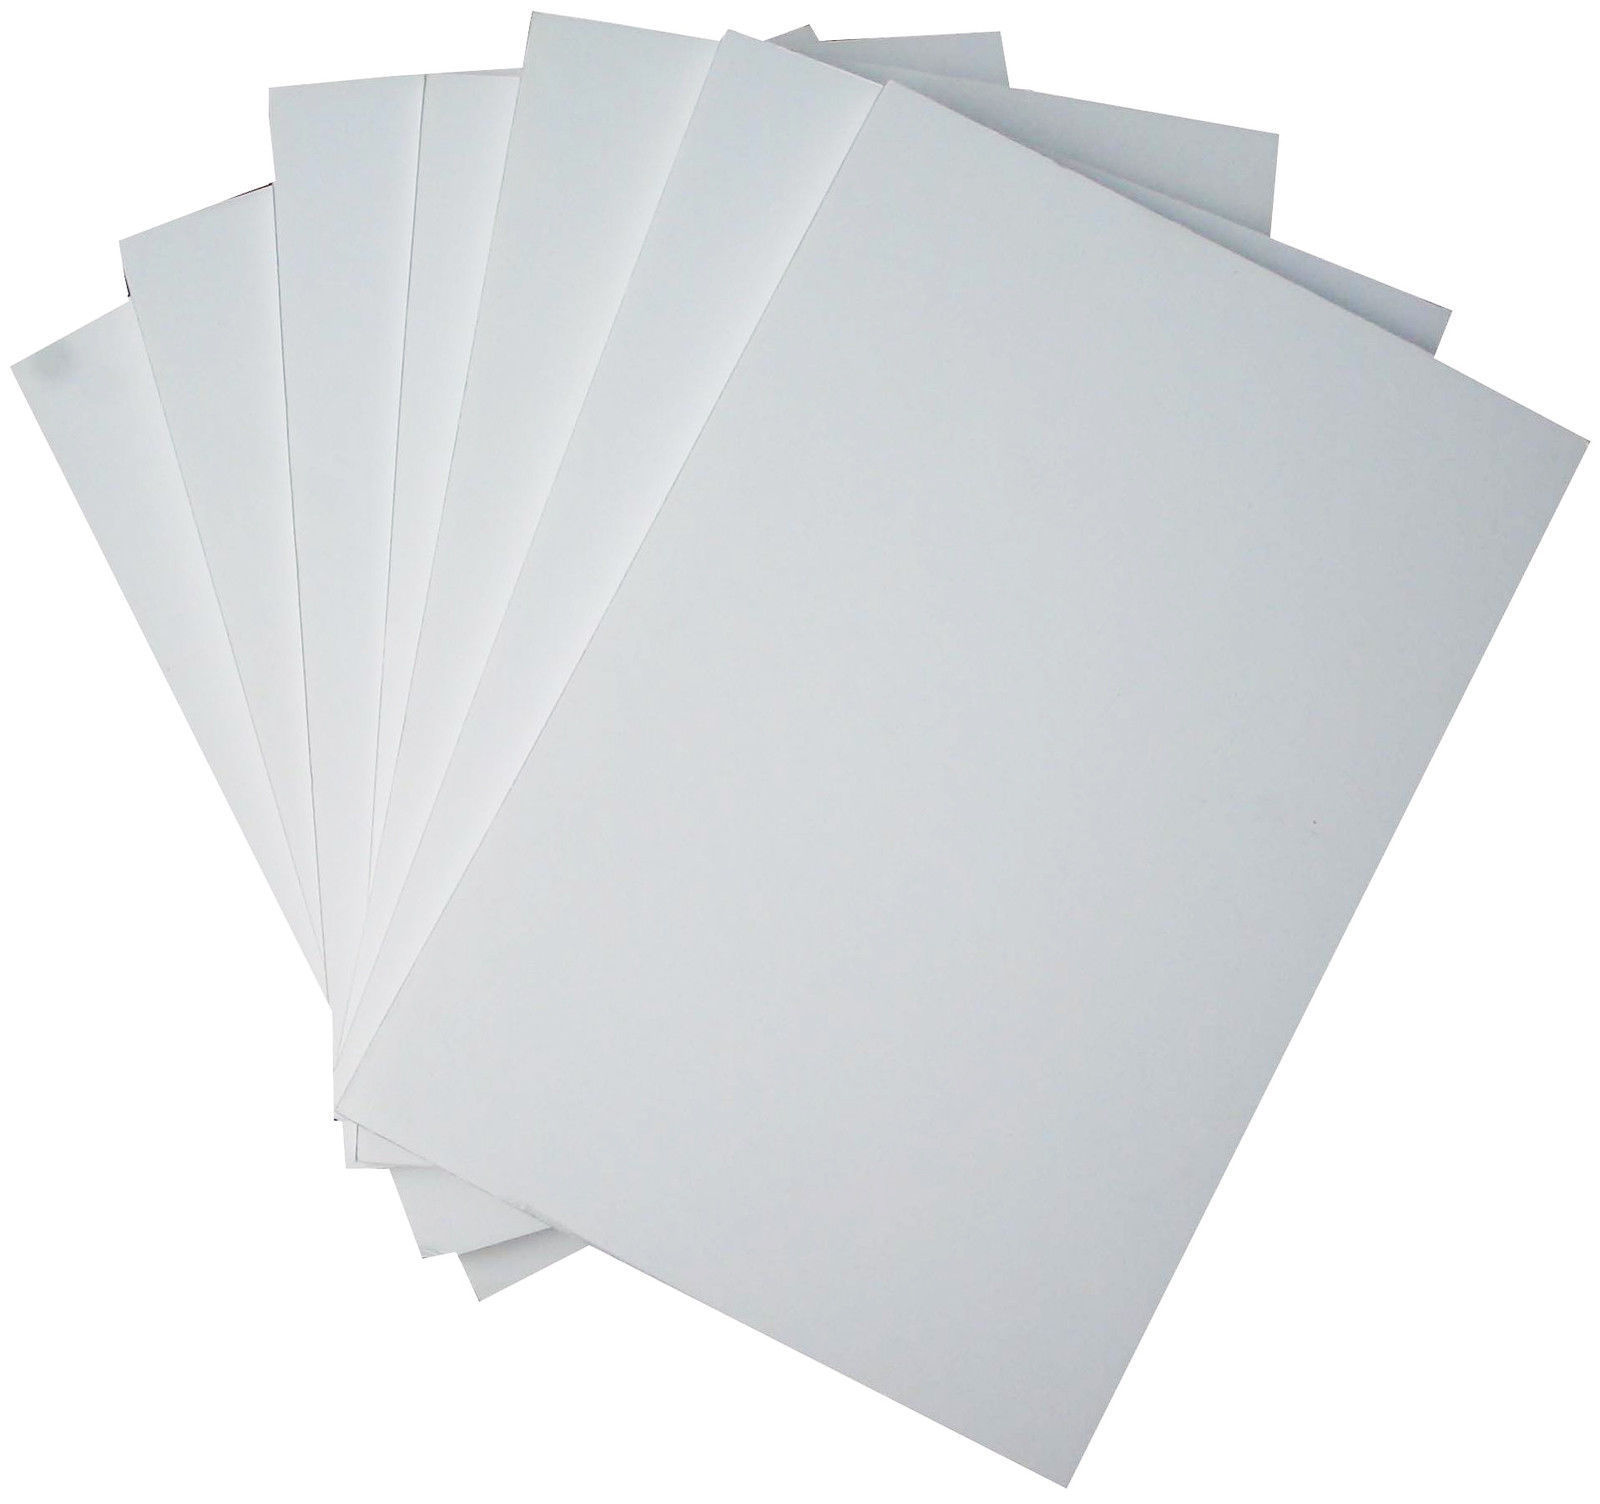 White Foam Board / Foamboard - 5mm - A1 A2 A3 A4 Sizes | eBay